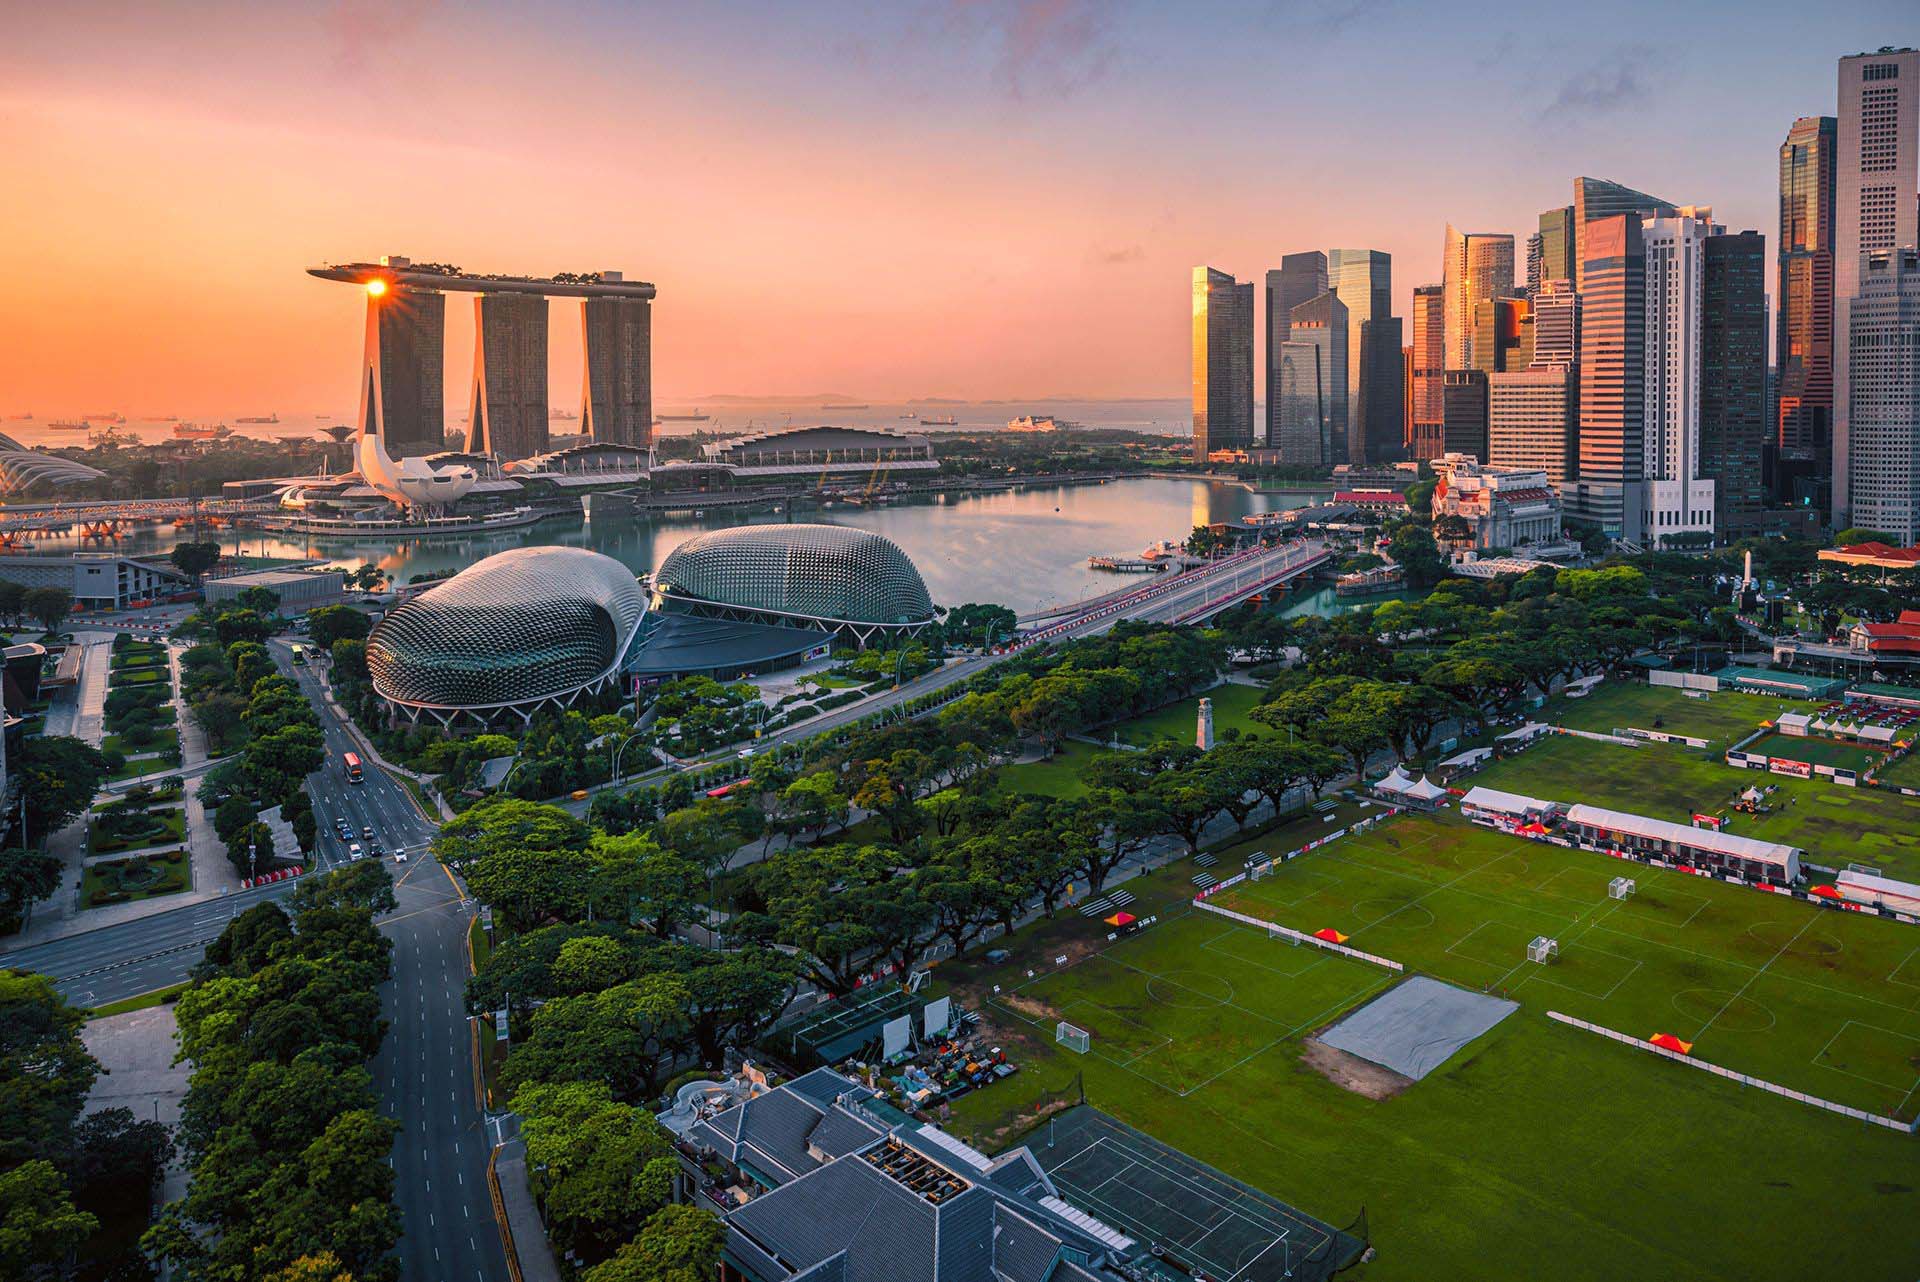 【全球榜单·持续更新】治安佳英语强交通便宜 最适合独旅地点新加坡排第四